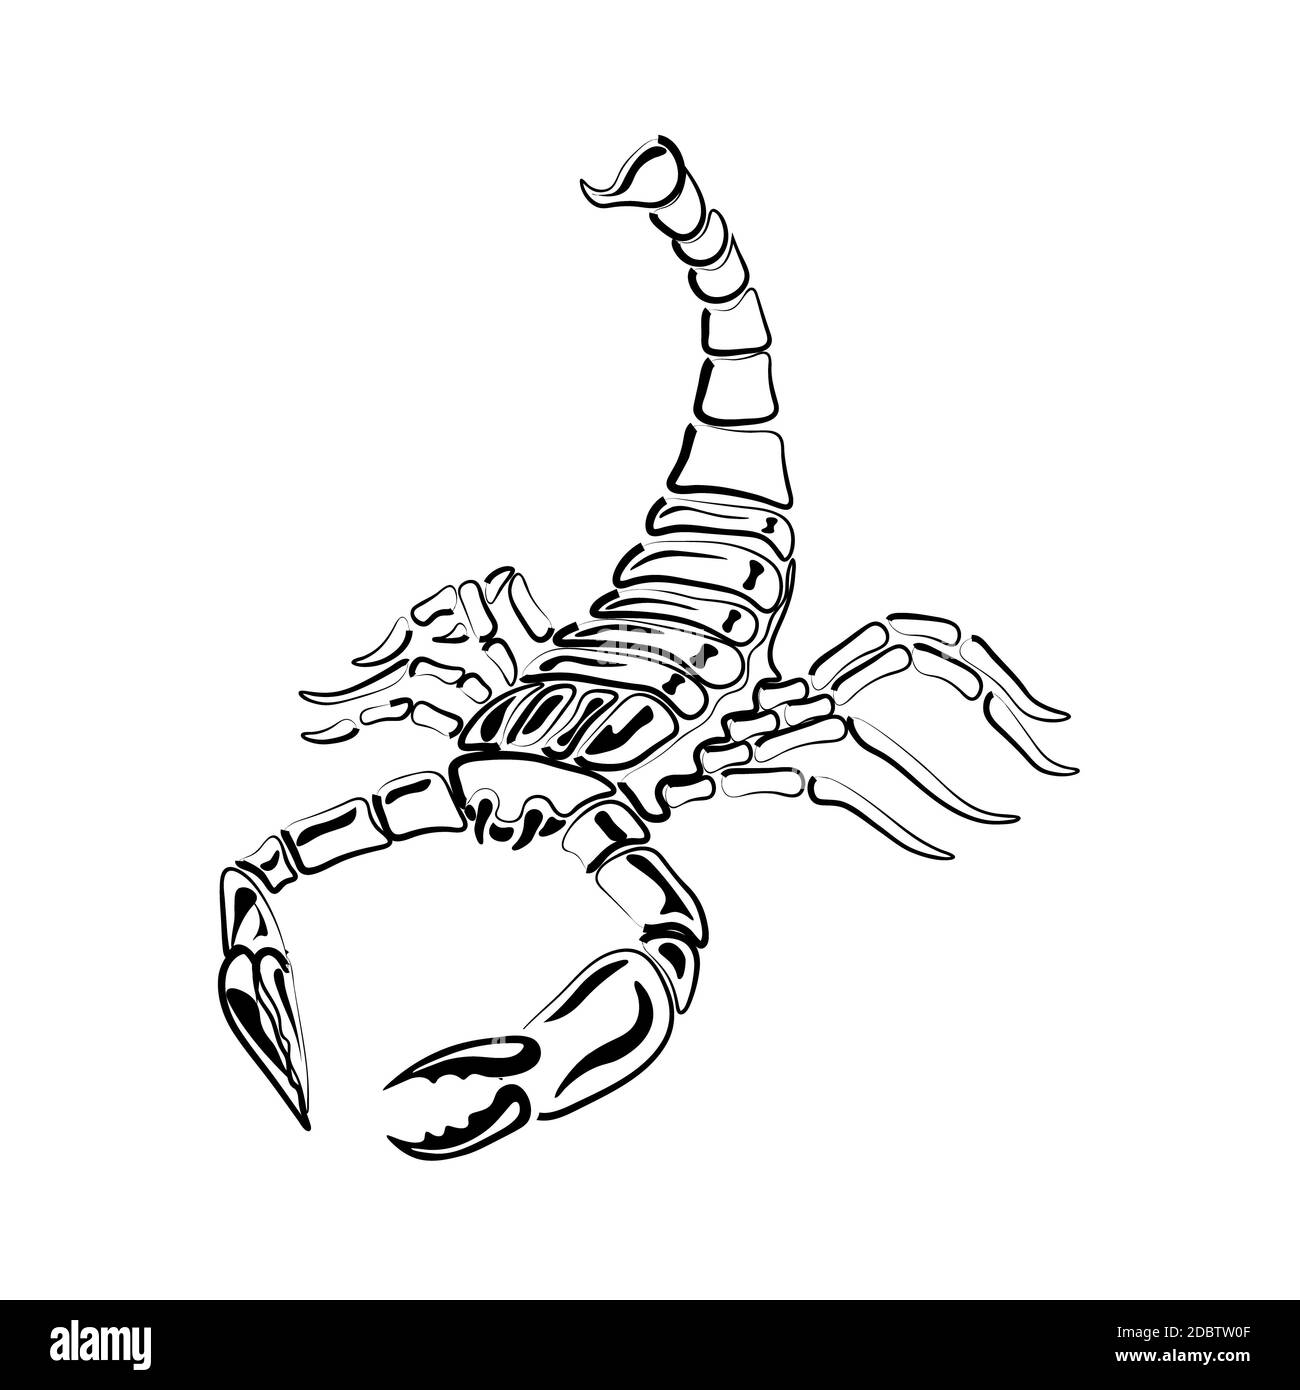 Scorpion noir et blanc pour tatouages, signe zodiaque, illustration vectorielle Banque D'Images